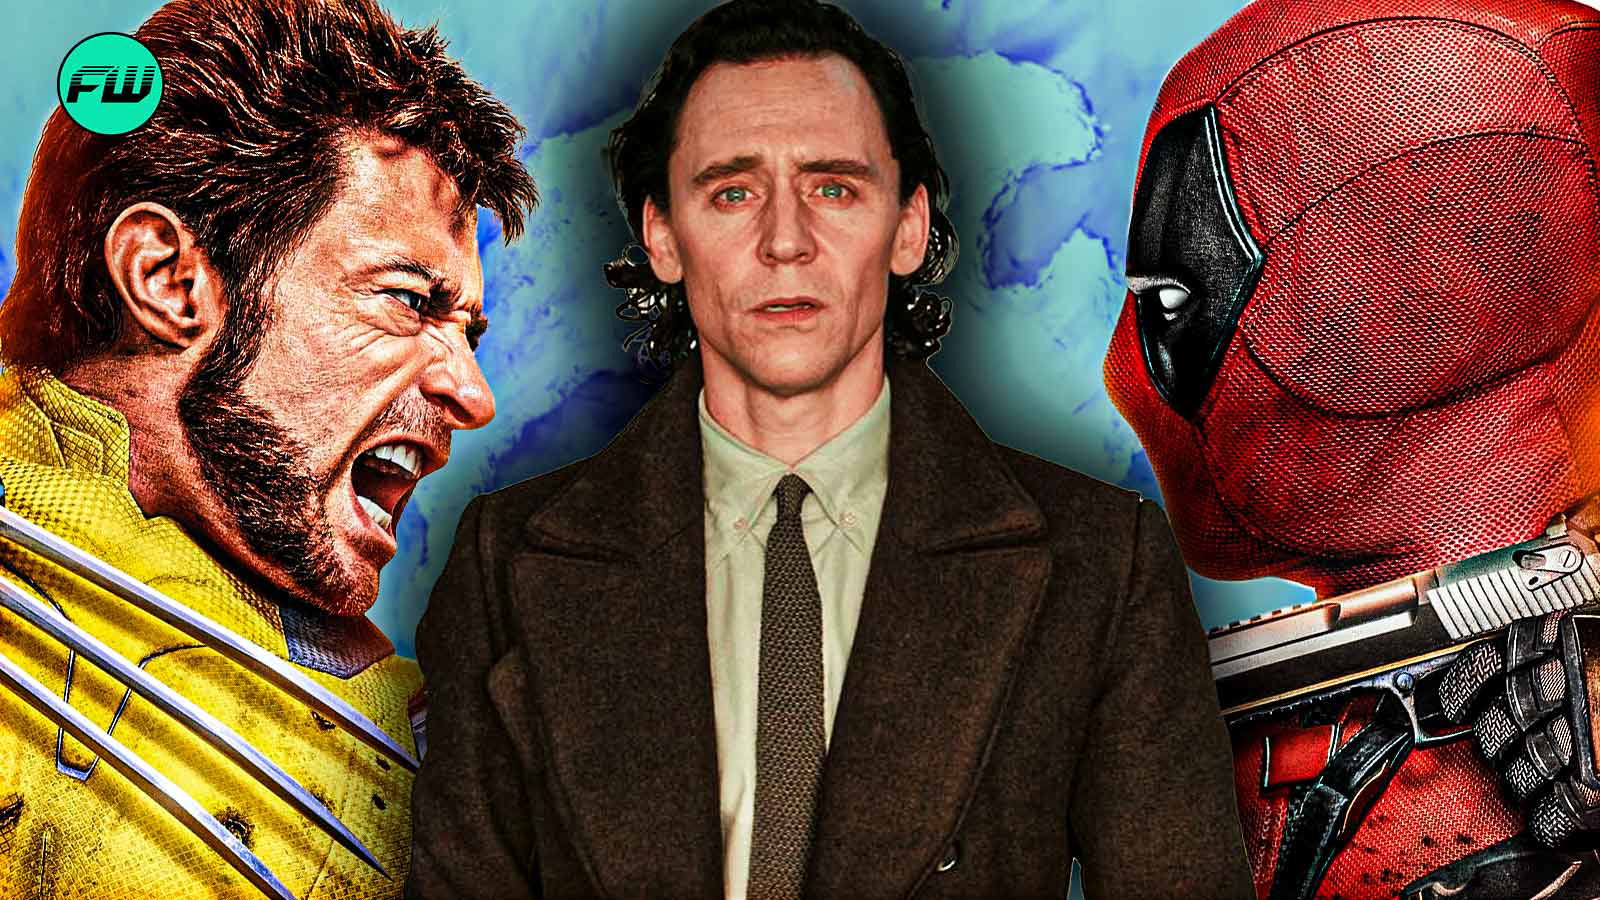 The T.V.A. - Deadpool & Wolverine & Loki